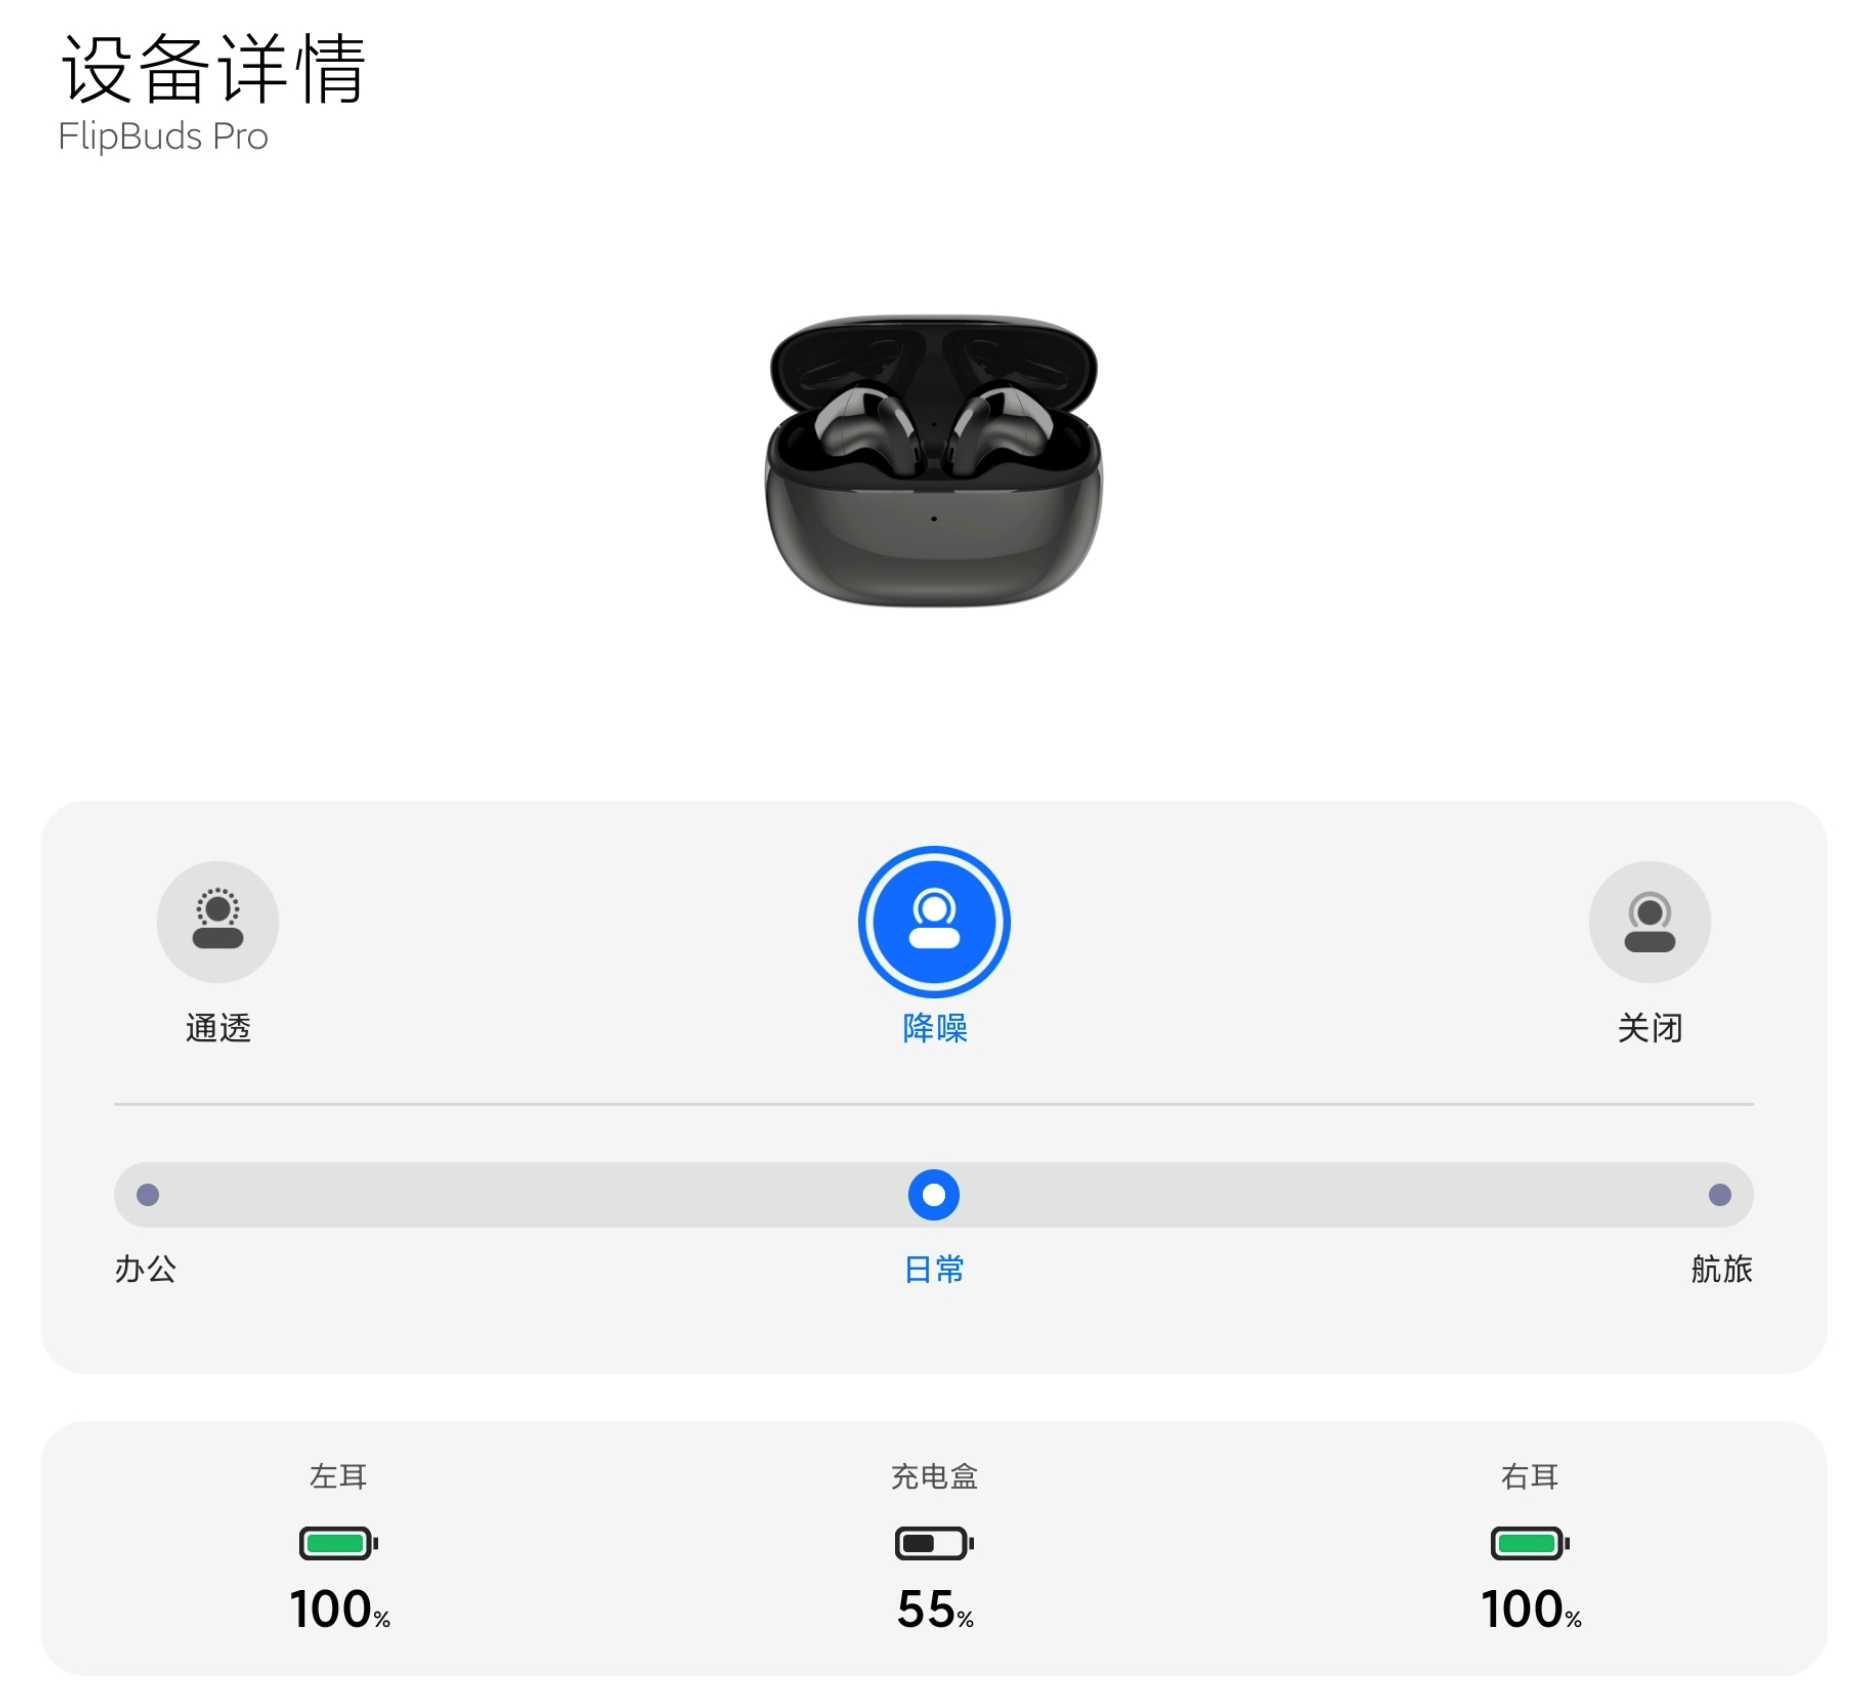 iShot2021 05 14 09.42.24 - Xiaomi Noise Cancelling Headphones Pro prima esperienza: entro mille yuan, eccezionale riduzione del rumore, buona qualità del suono